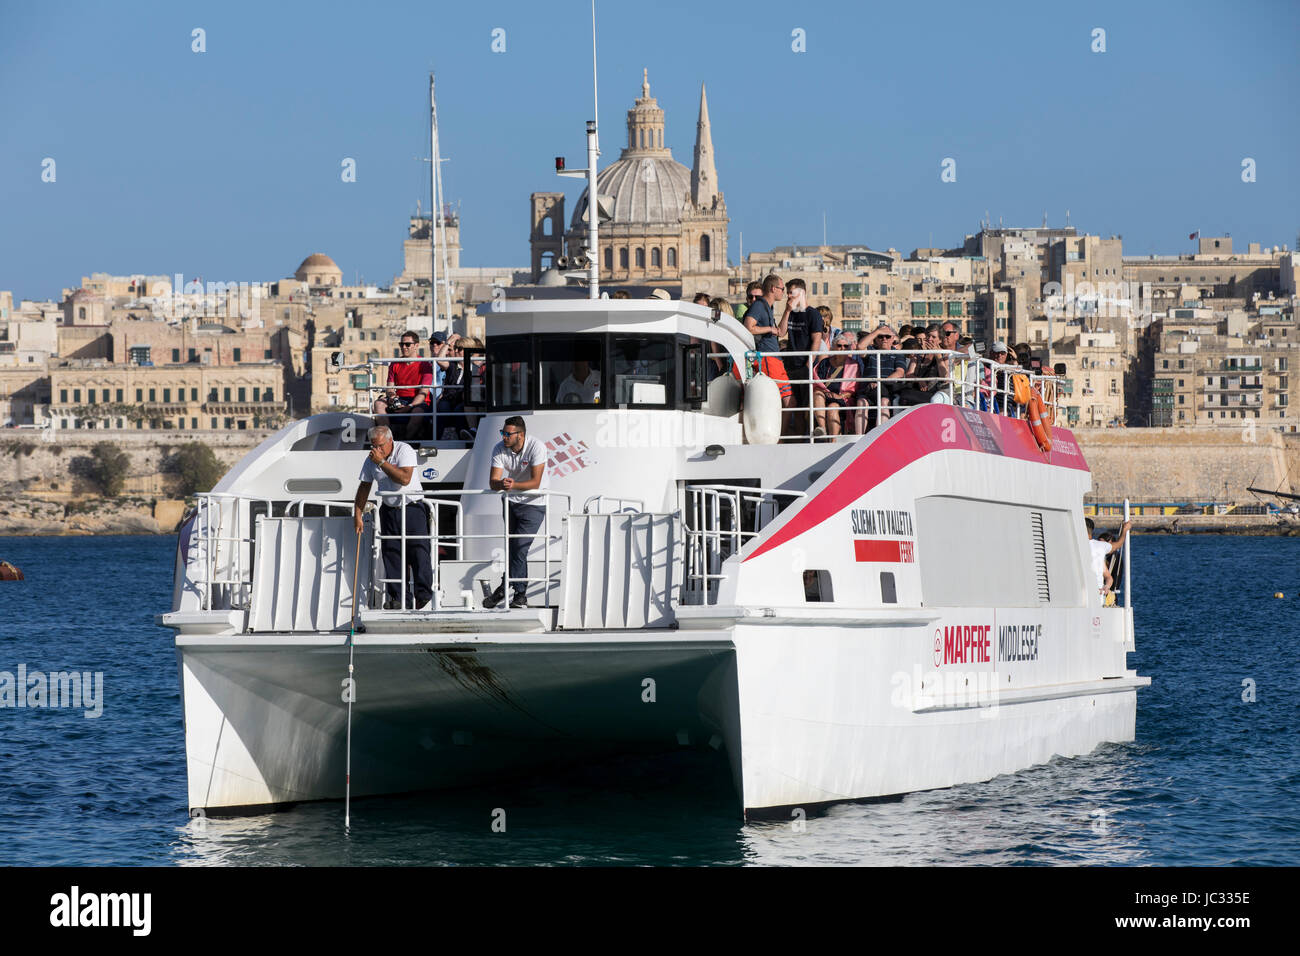 Malta, Valletta, skyline of the old town, ferry to Valletta from Sliema, Stock Photo